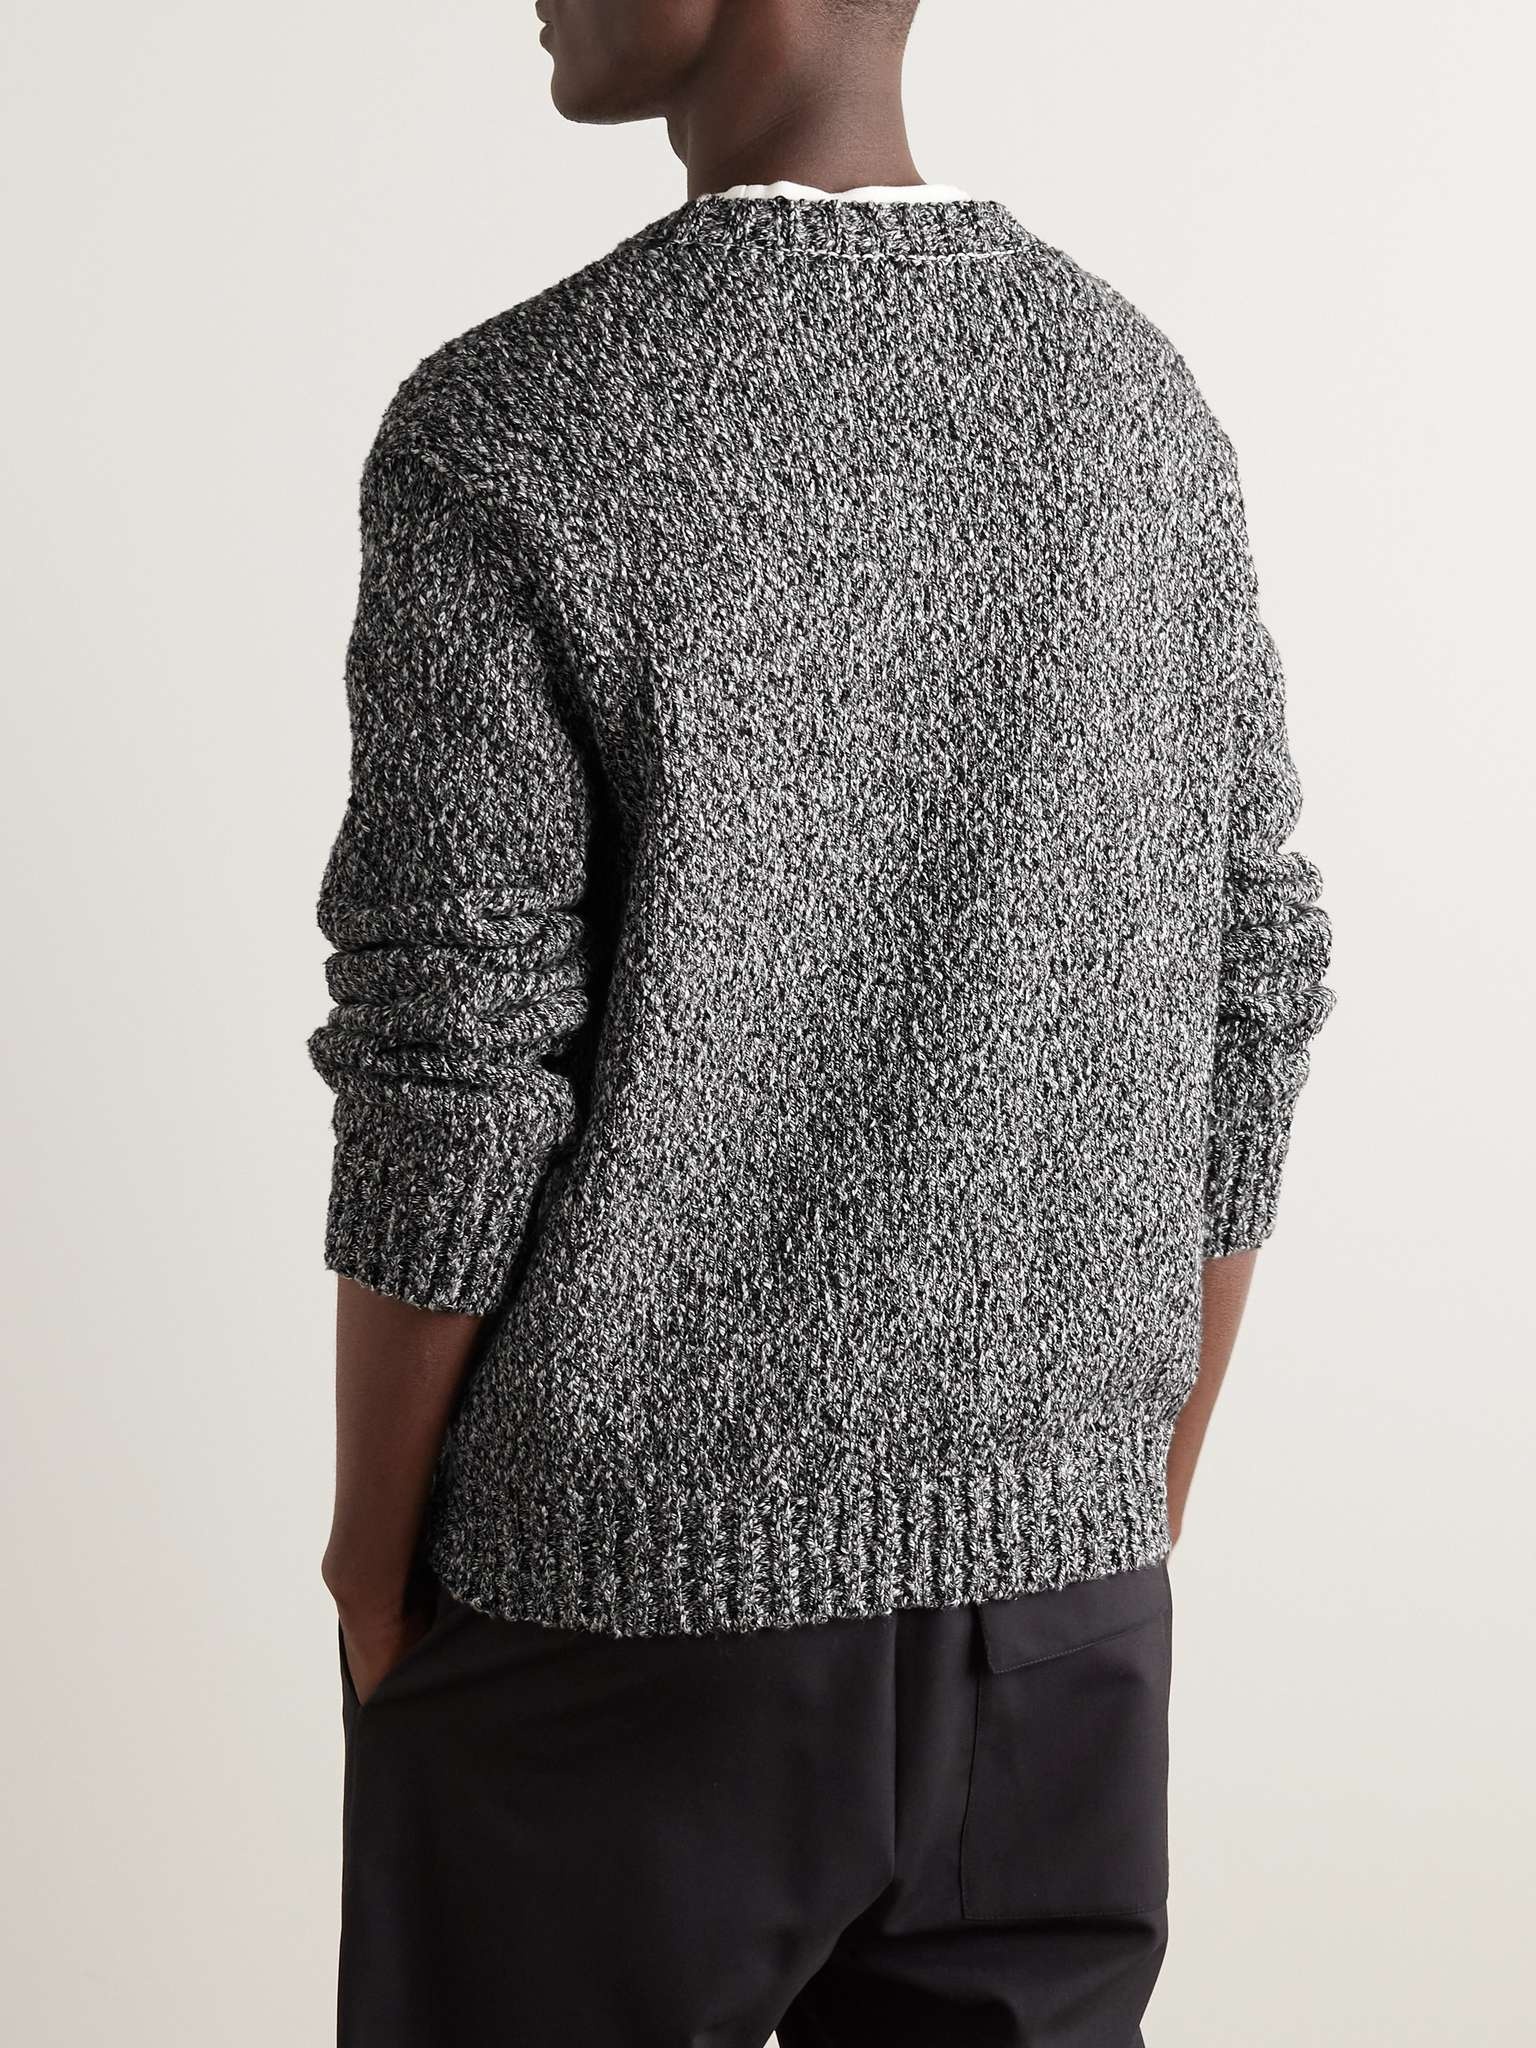 Mouliné Cotton Sweater - 3